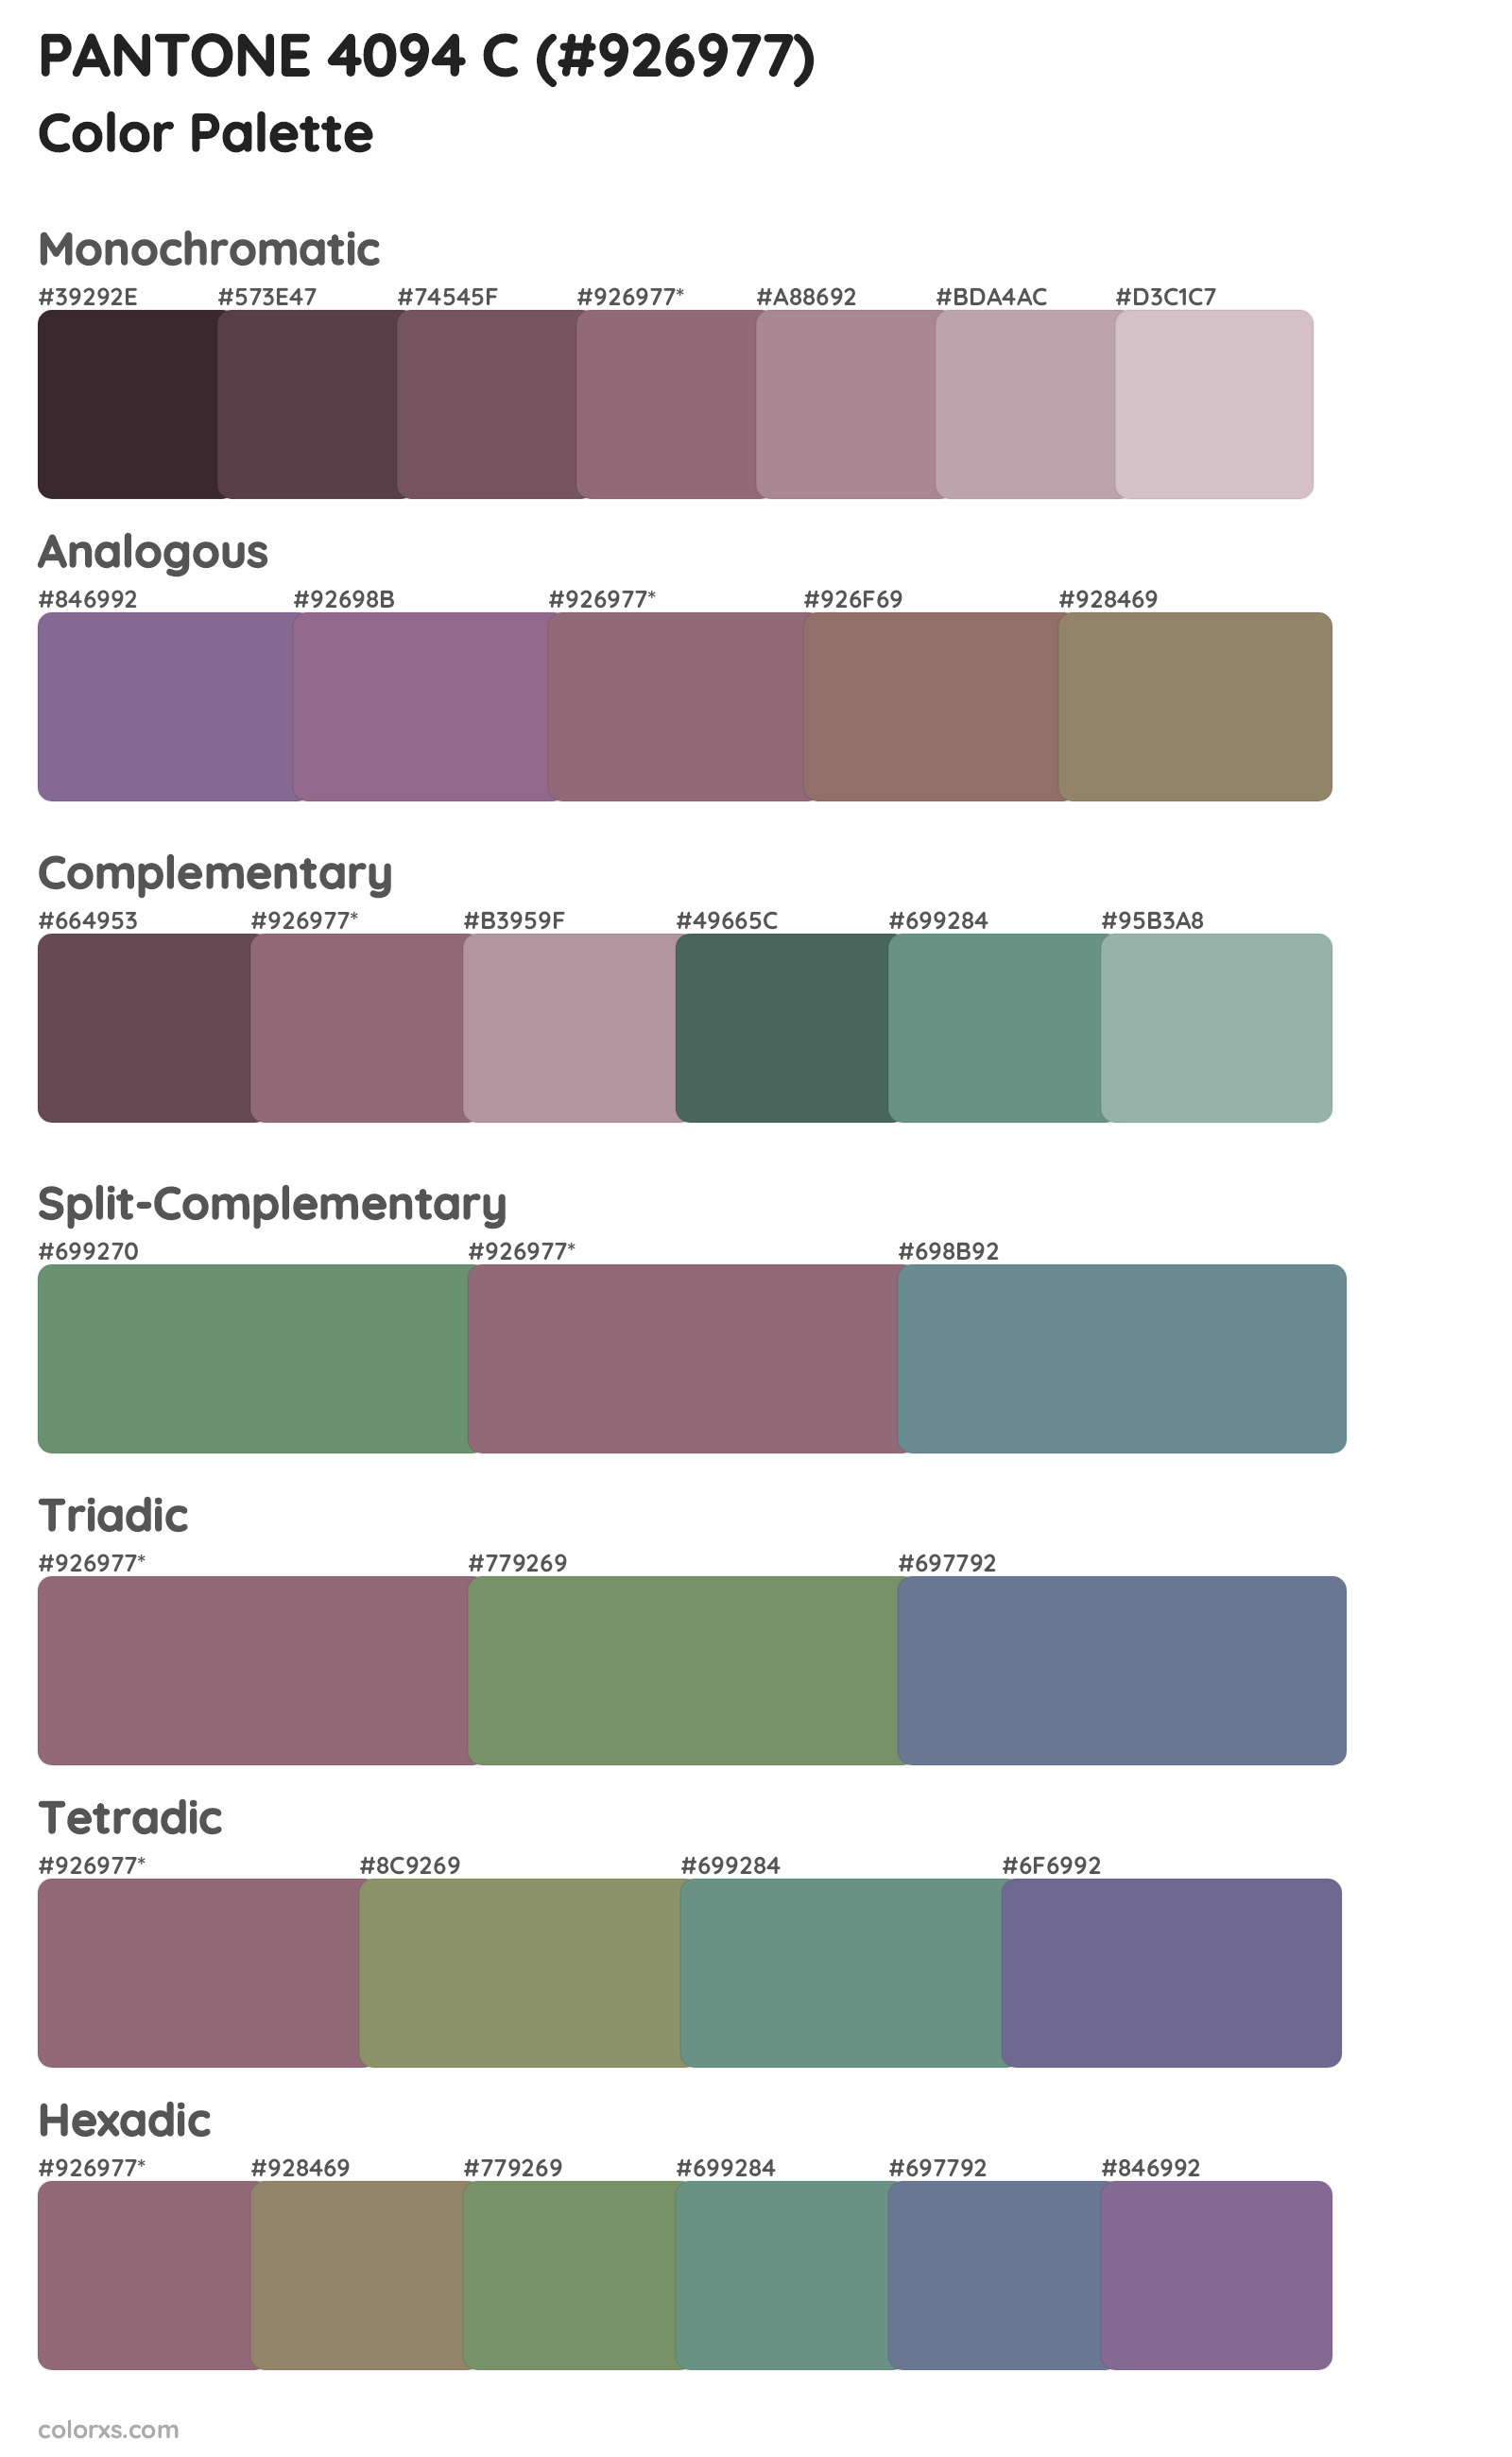 PANTONE 4094 C Color Scheme Palettes